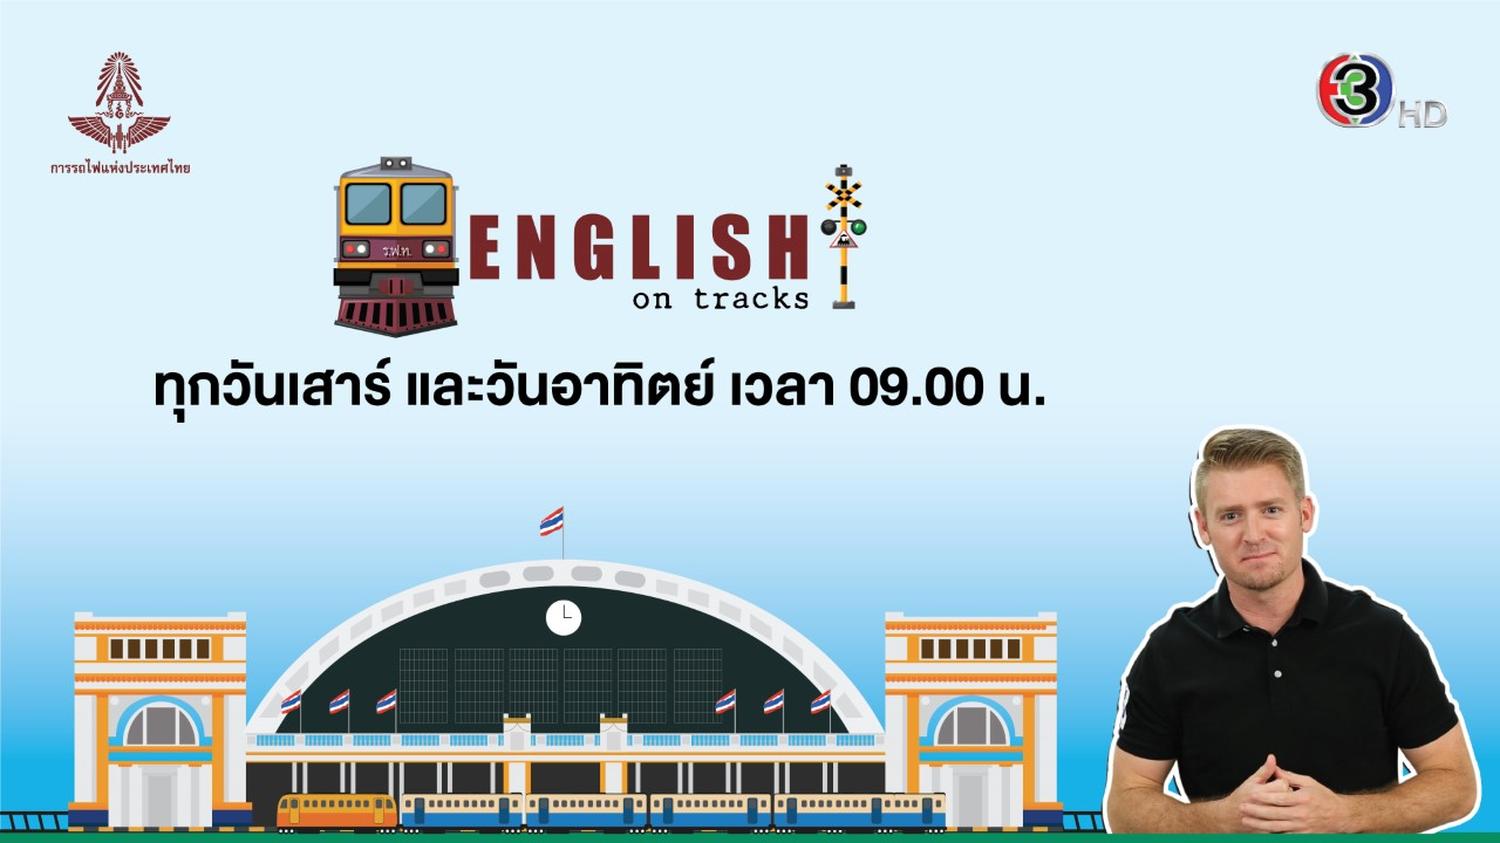 ช่อง 3 ส่ง English on Tracks รายการใหม่โชว์ความรู้เรื่องรถไฟไทย !! พร้อมควบคู่คำศัพท์ และประโยคภาษาอังกฤษที่น่าสนใจตลอดกันยายนนี้